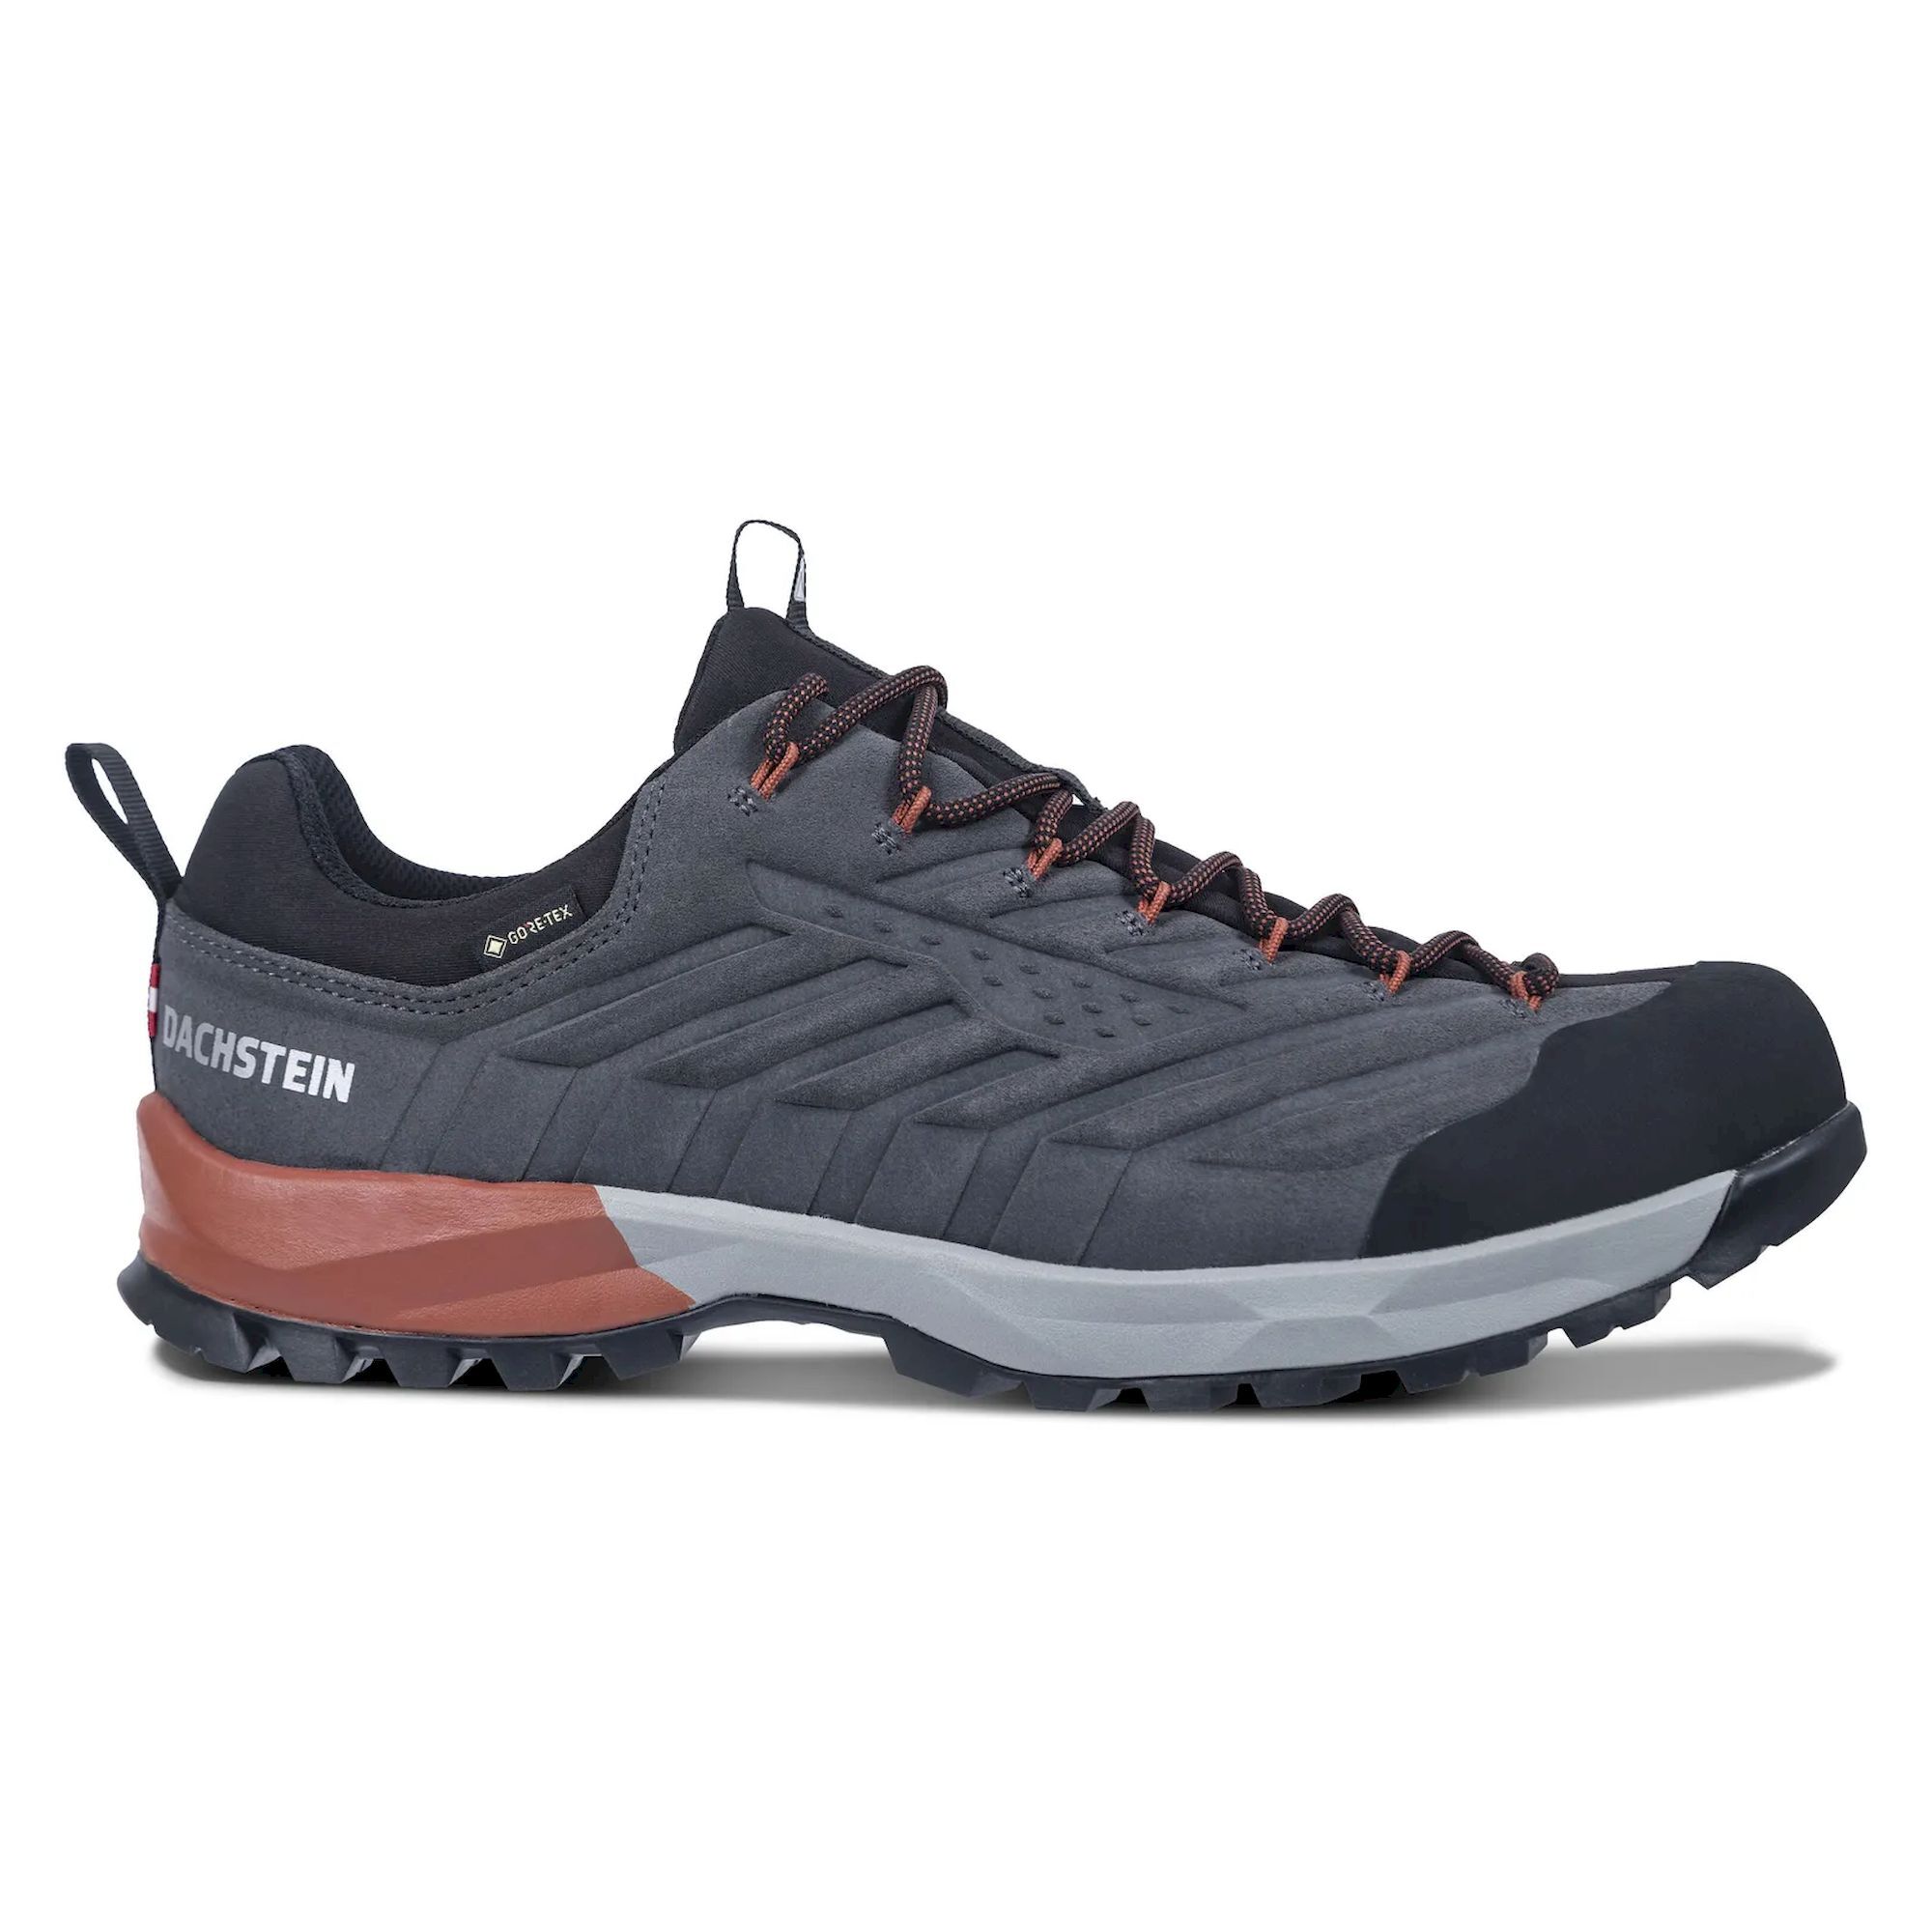 Dachstein SF-21 LC GTX - Hiking shoes - Men's